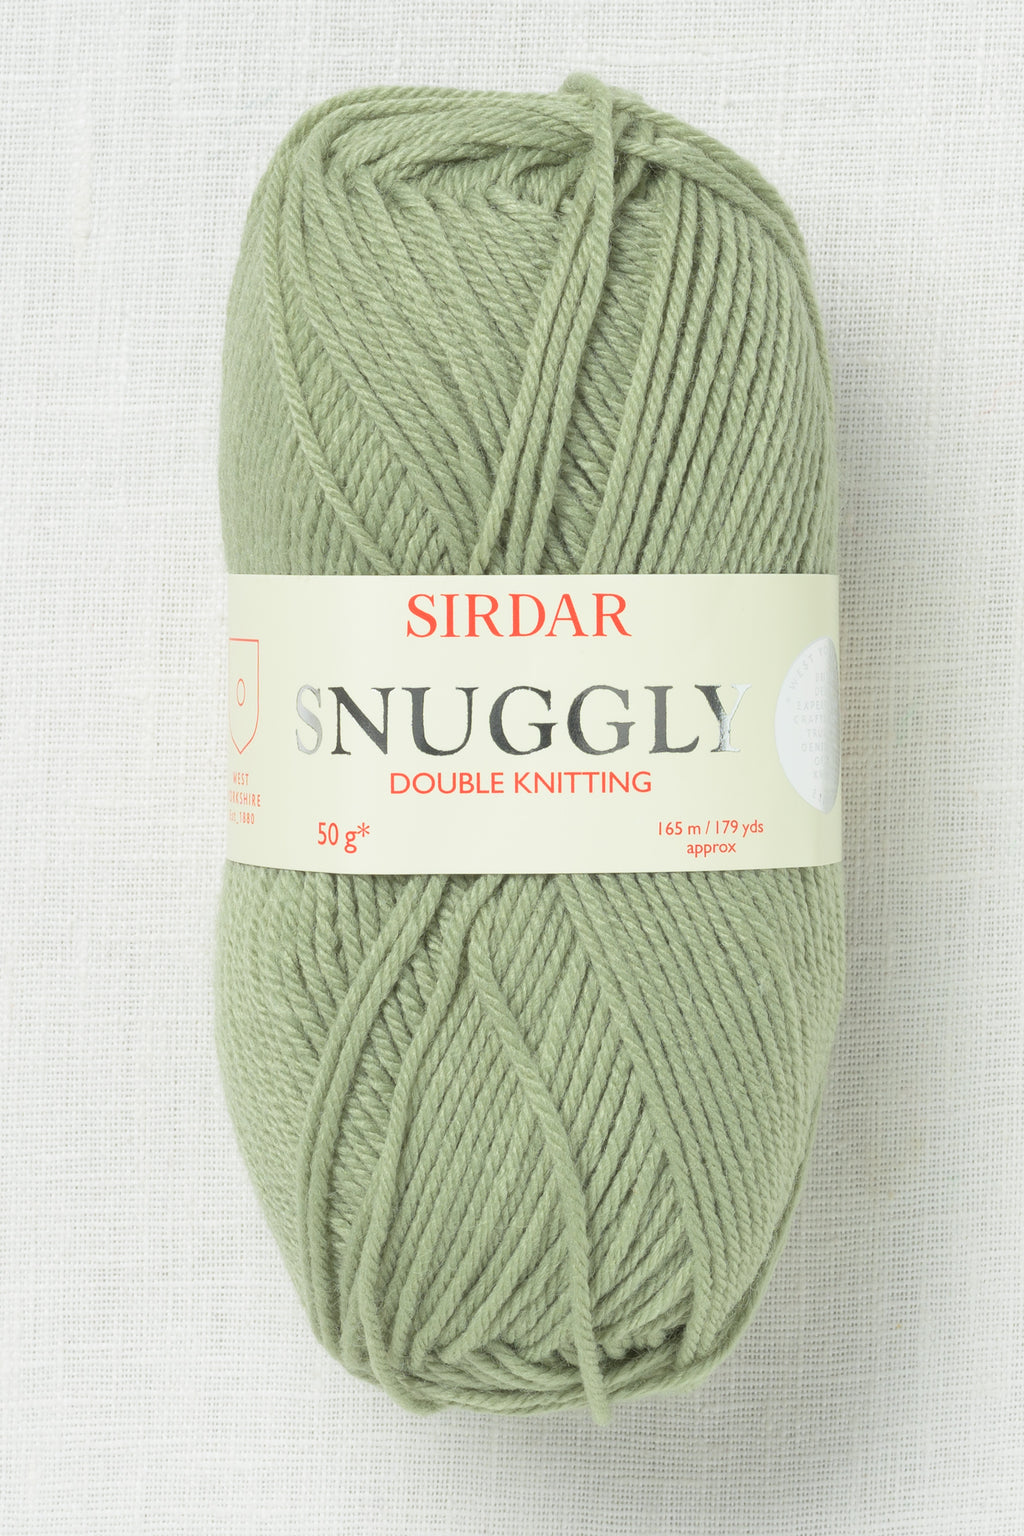 Sirdar Snuggly DK 529 Pear